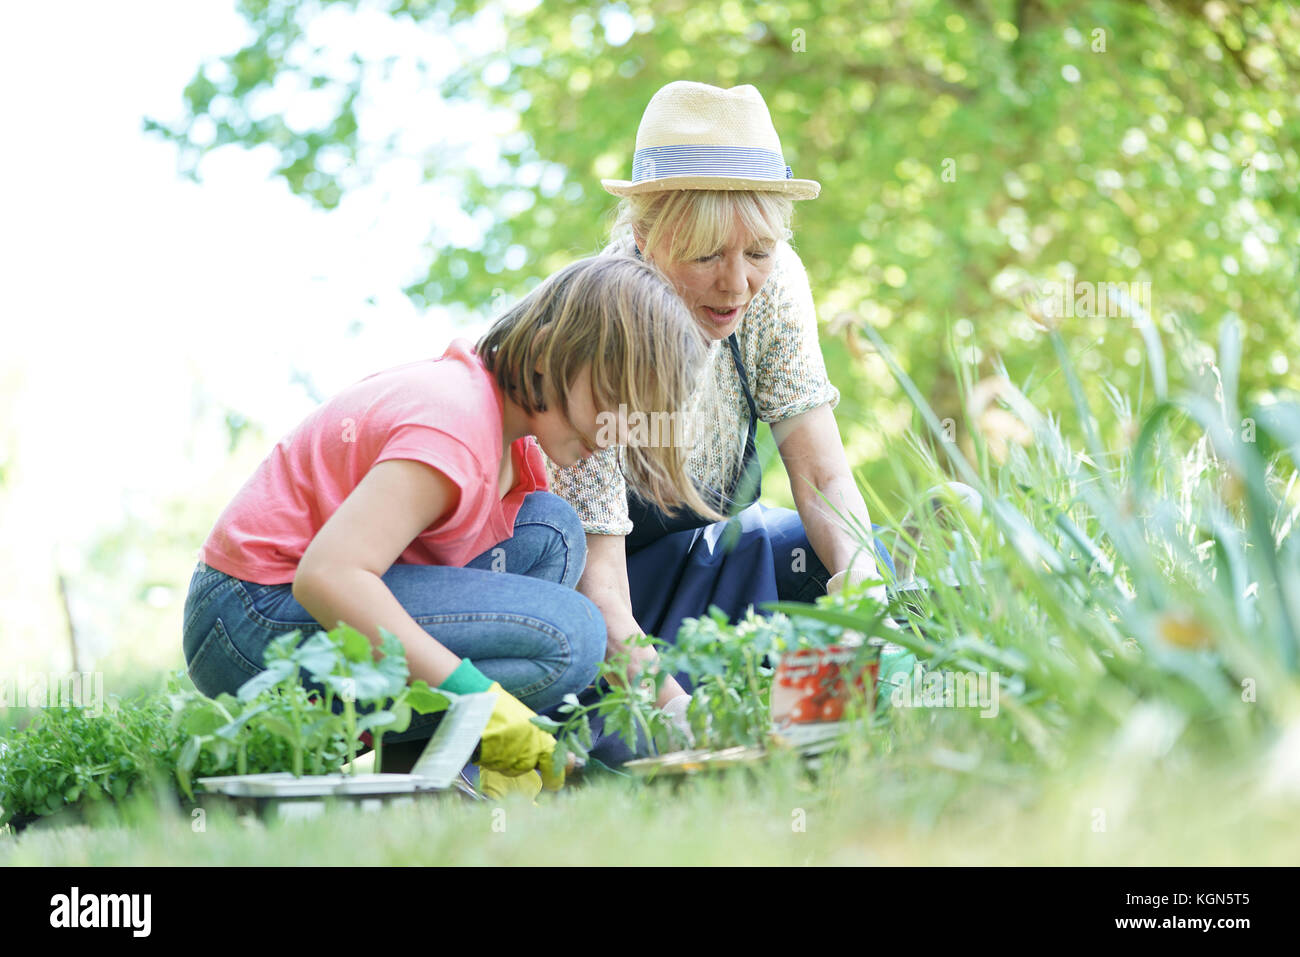 Grand-mère et petite-fille gardening together Banque D'Images